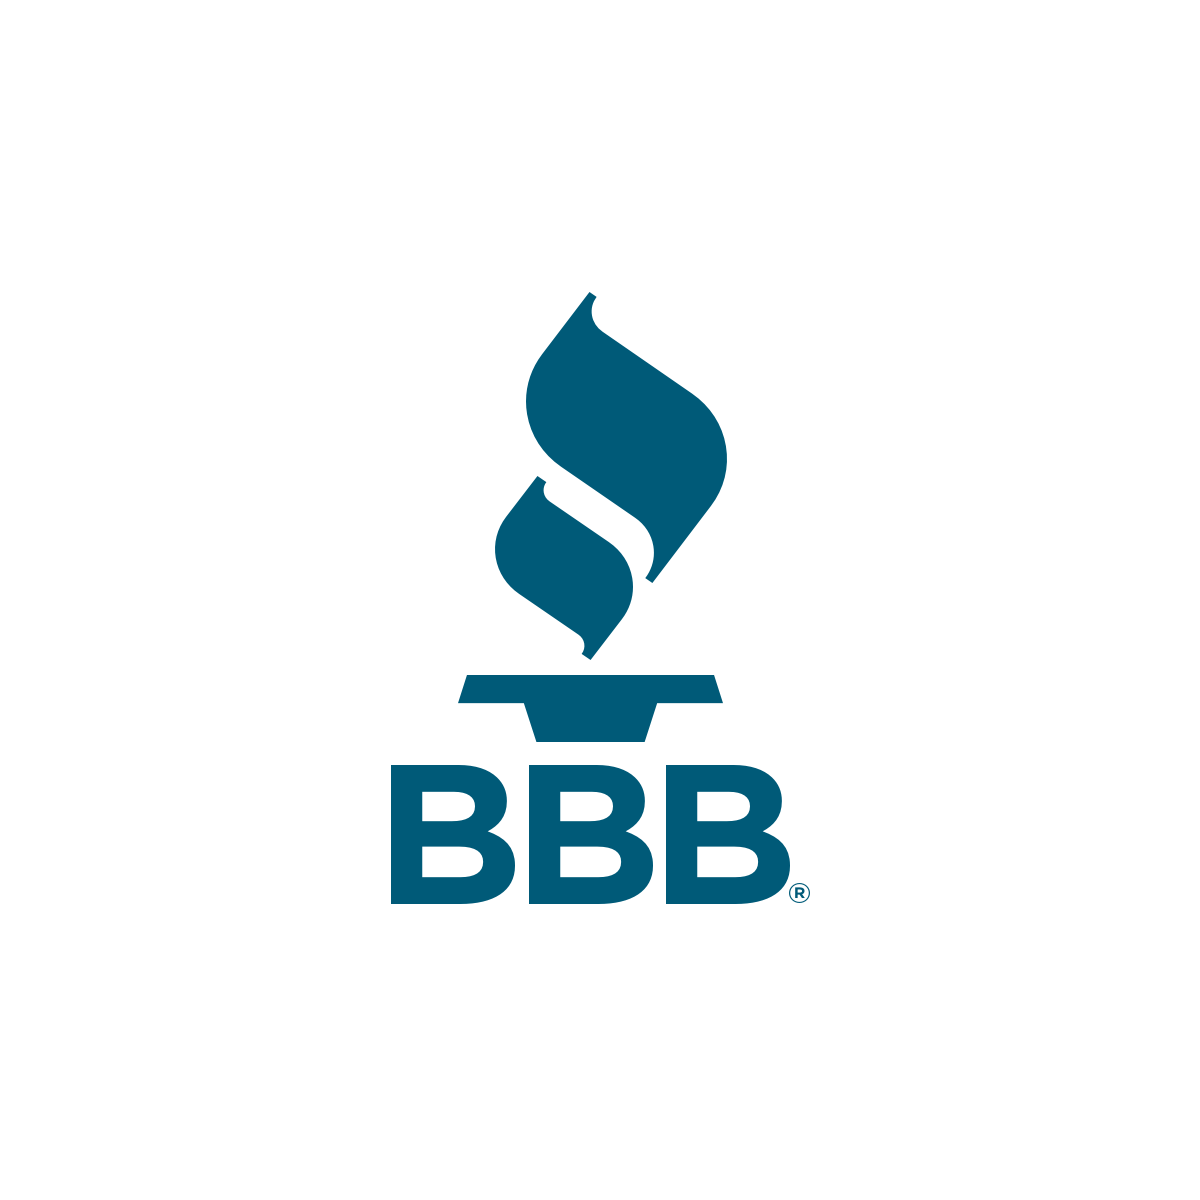 Proxy BBB (Better Business Bureau)